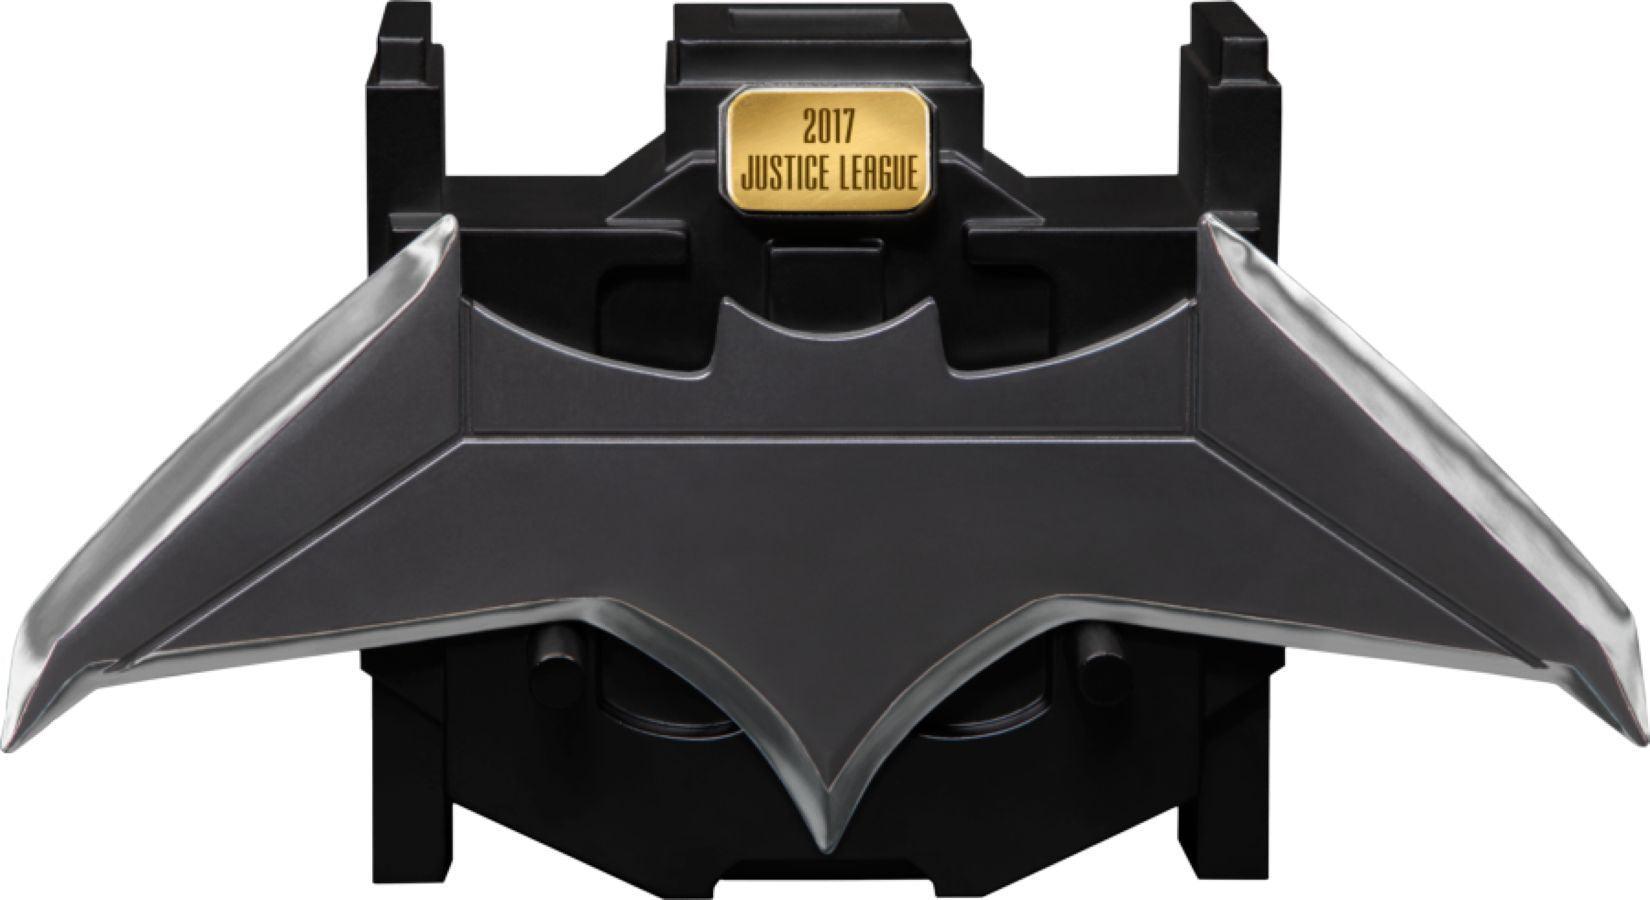 IKO1404 Justice League (2017) - Batarang Metal Replica - Ikon Collectables - Titan Pop Culture